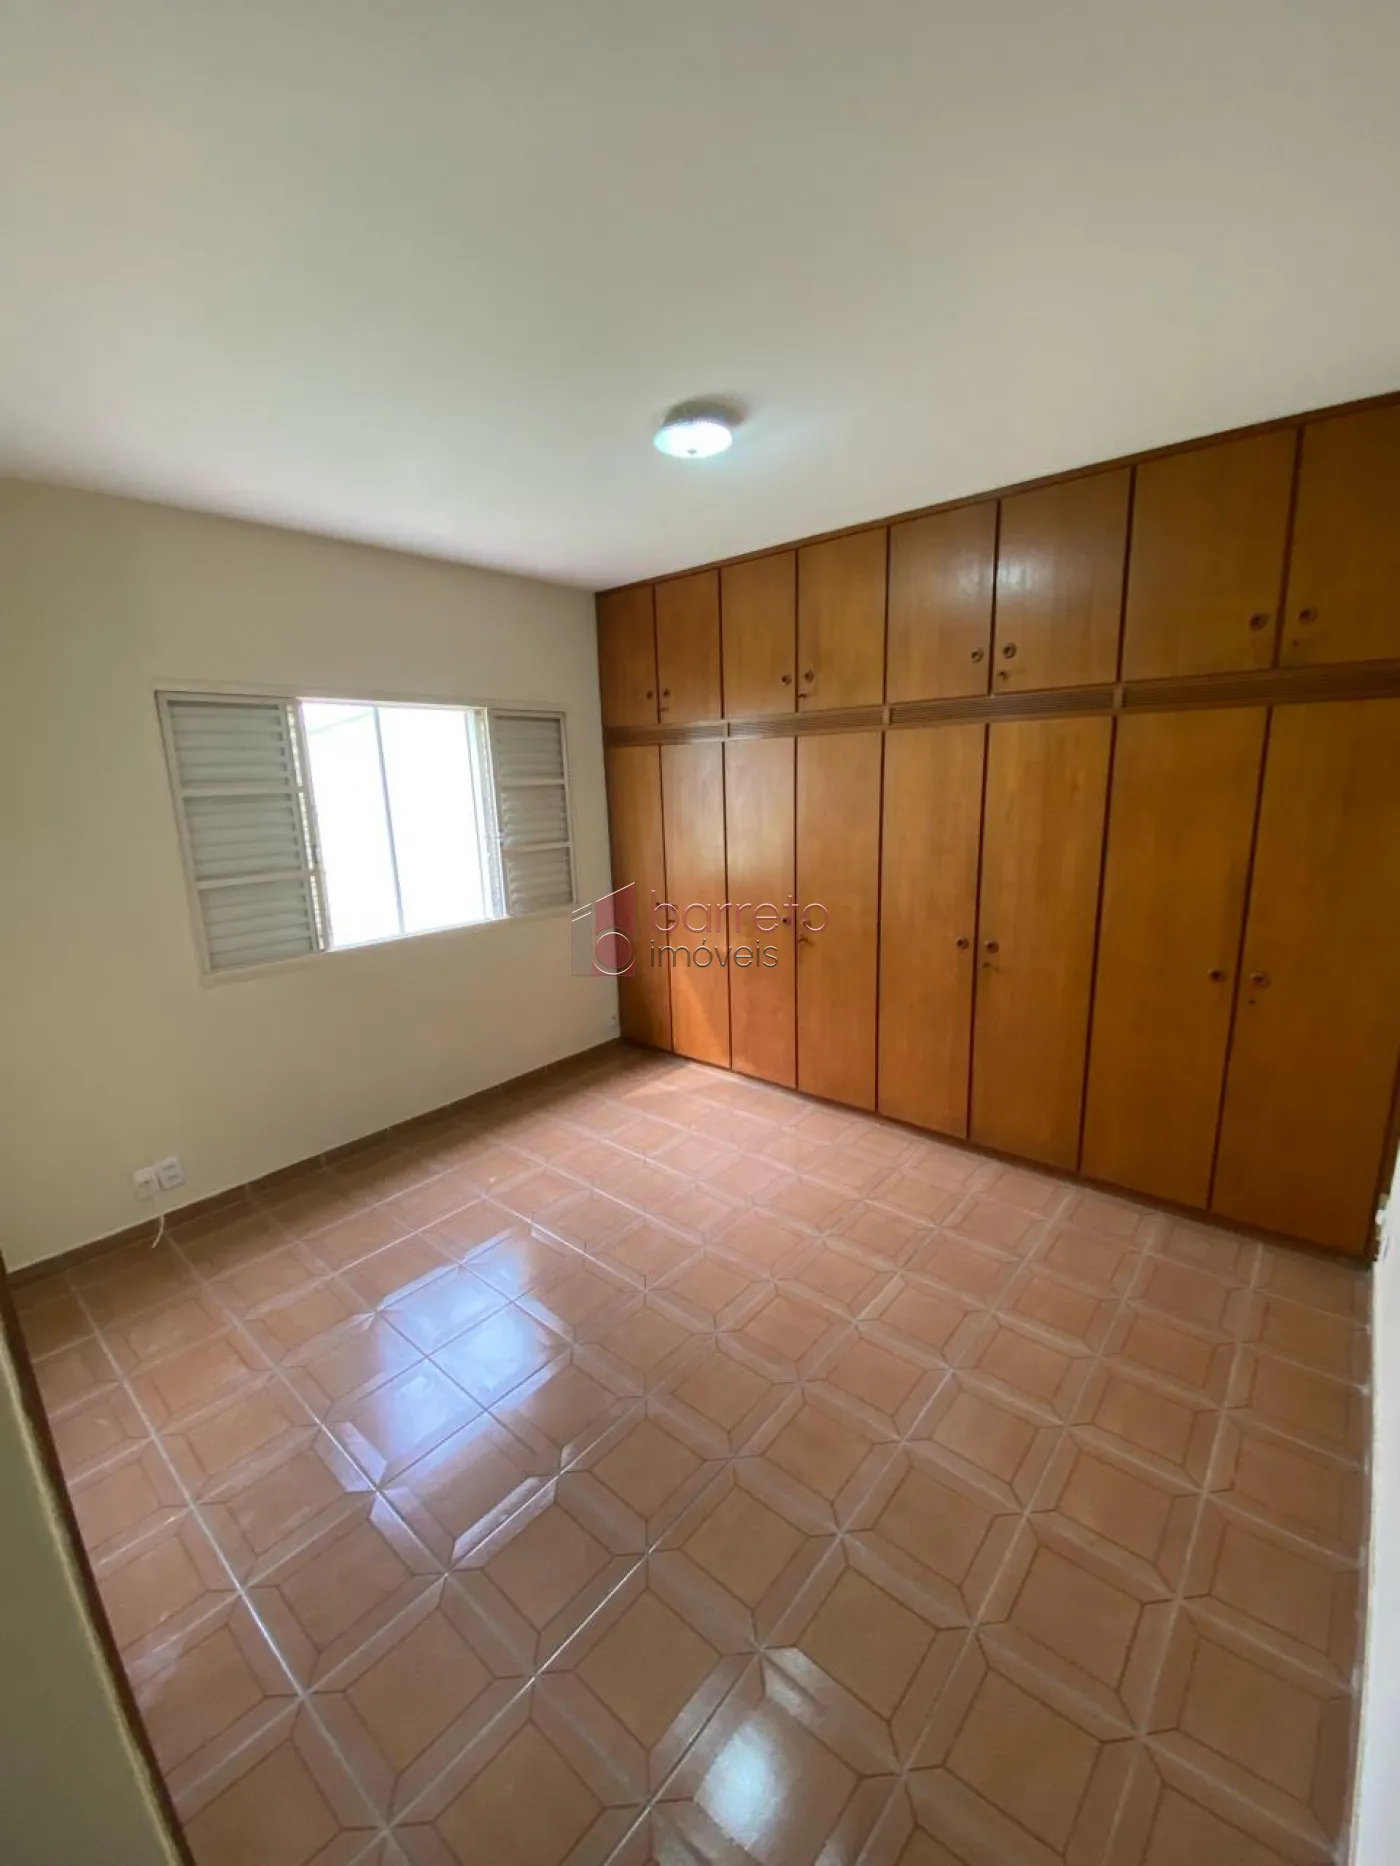 Comprar Casa / Térrea em Jundiaí R$ 668.000,00 - Foto 6